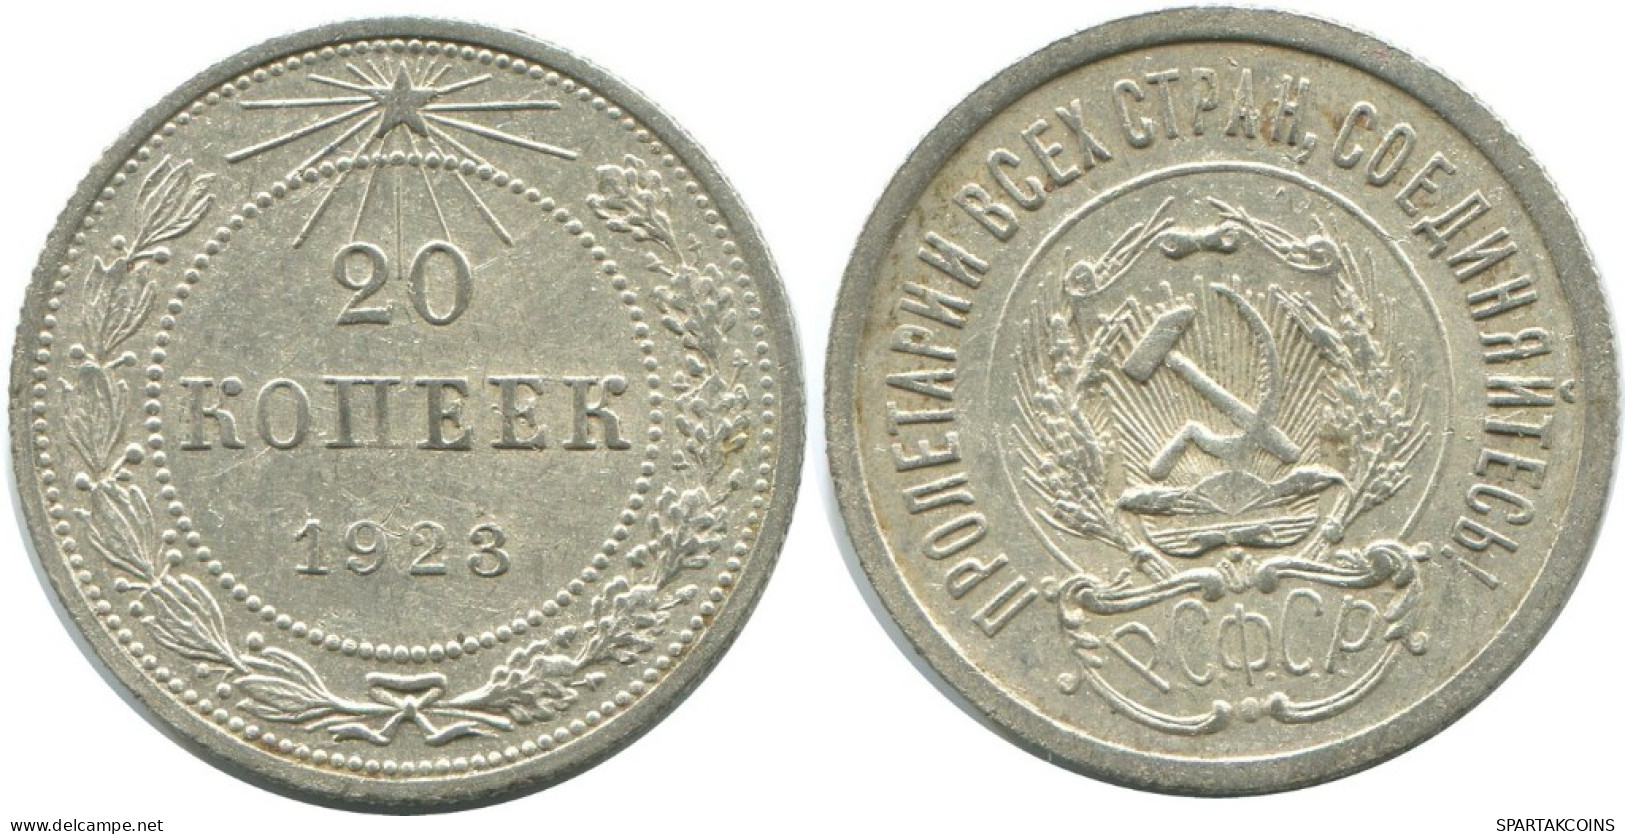 20 KOPEKS 1923 RUSSIA RSFSR SILVER Coin HIGH GRADE #AF437.4.U.A - Russland